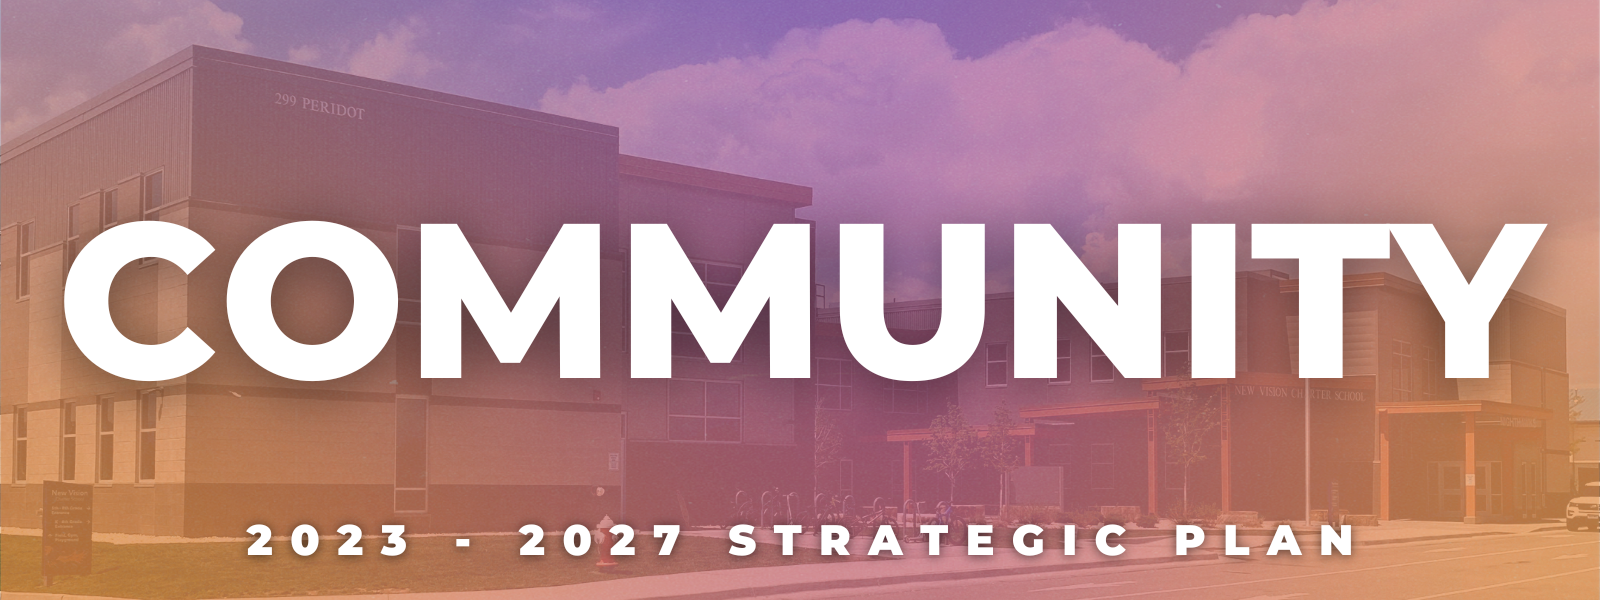 Community: 2023 - 2027 Strategic Plan